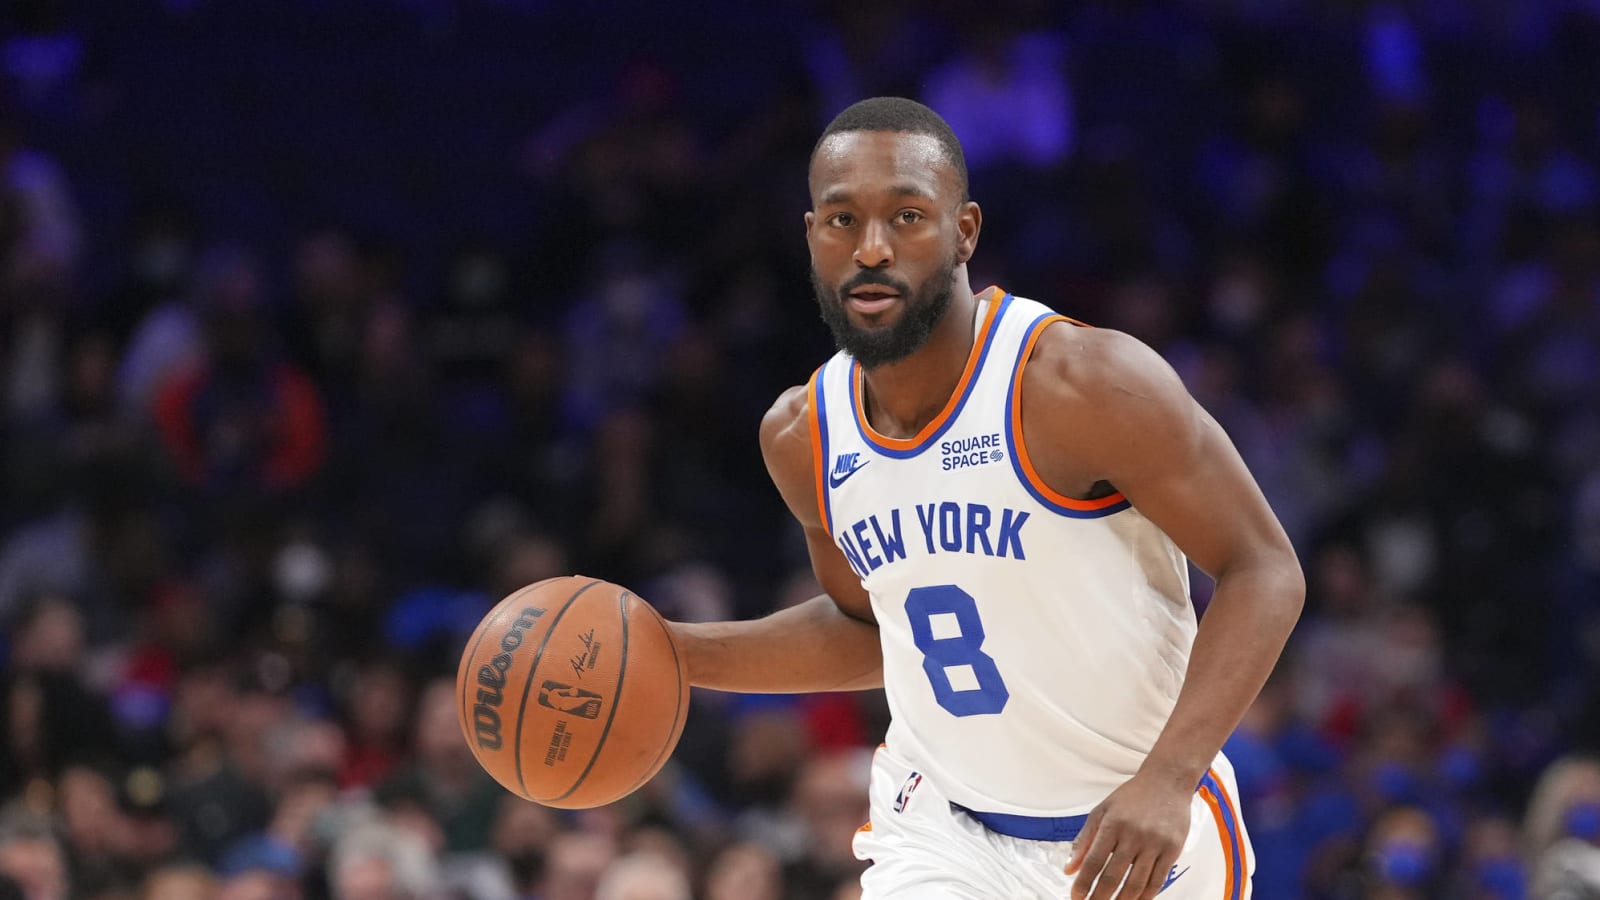 Watch: 76ers fan throws ball at Knicks point guard Kemba Walker